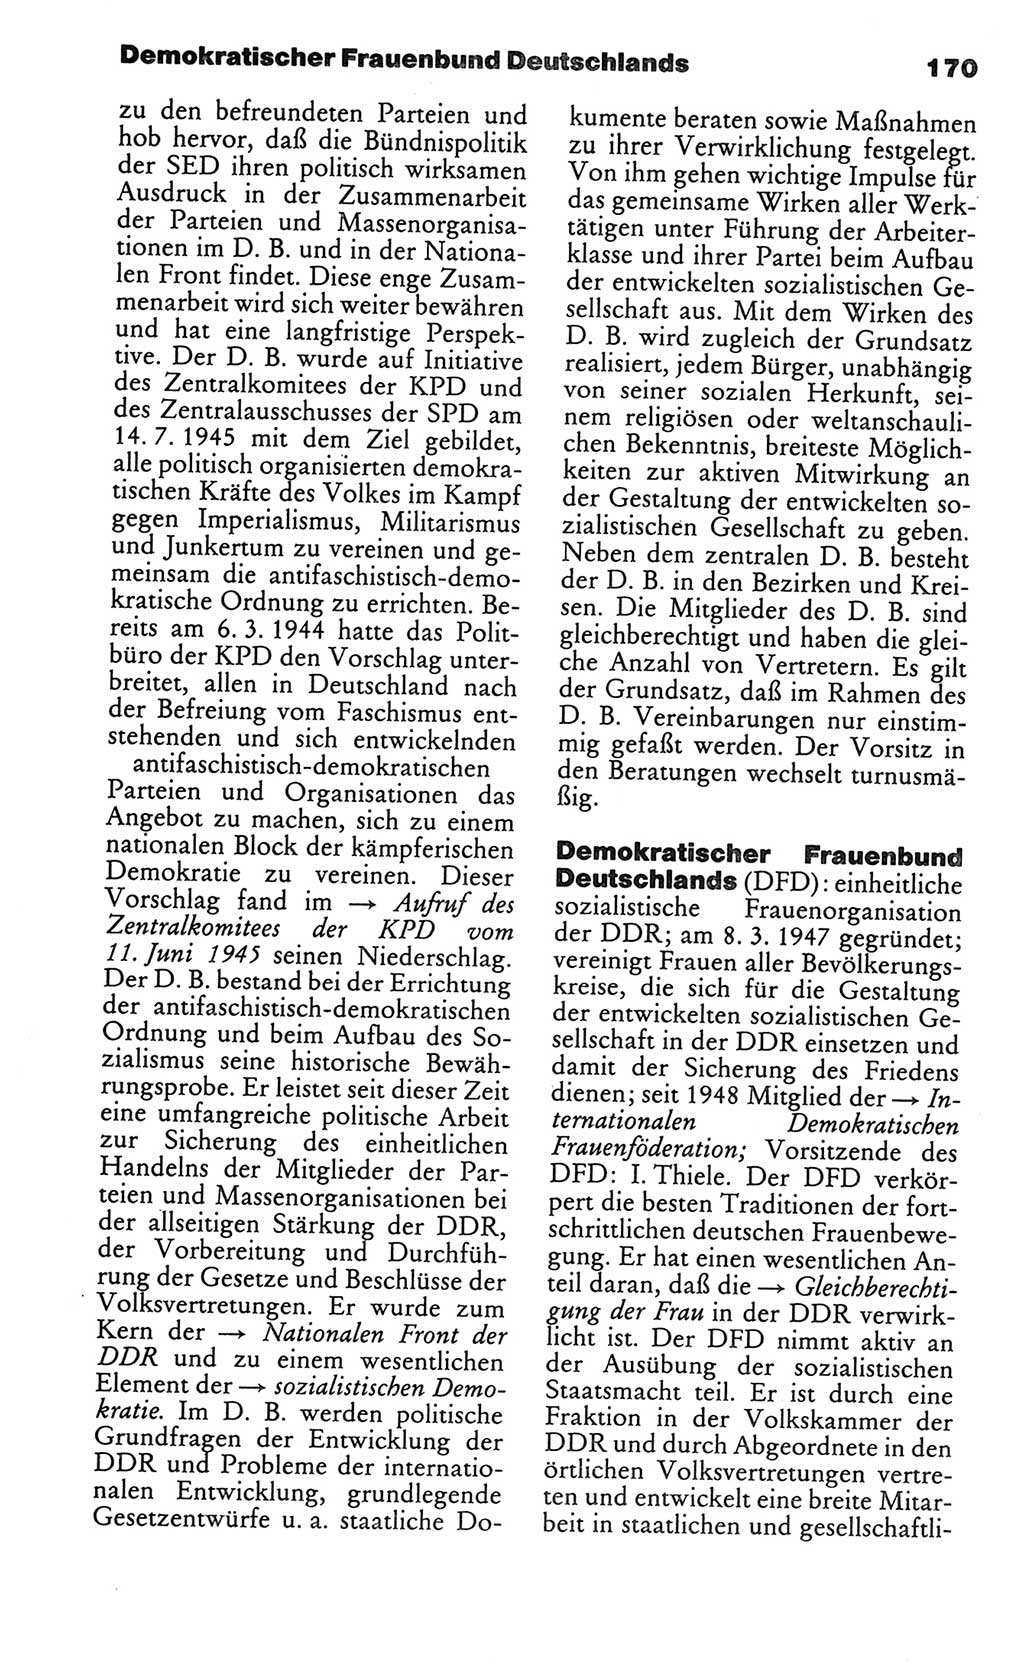 Kleines politisches Wörterbuch [Deutsche Demokratische Republik (DDR)] 1986, Seite 170 (Kl. pol. Wb. DDR 1986, S. 170)